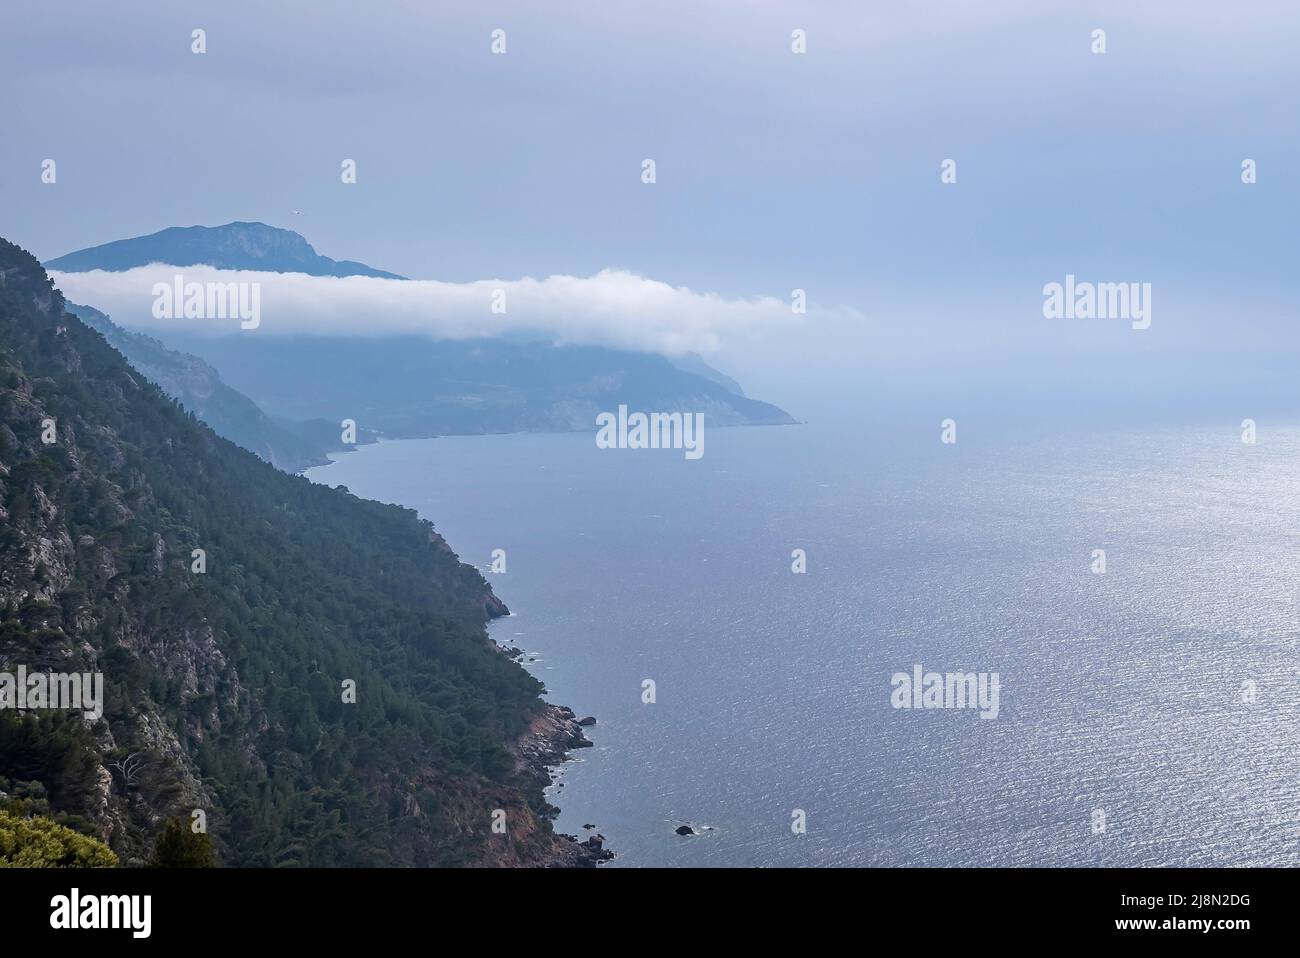 Vue panoramique sur le paysage méditerranéen et la falaise rocheuse contre le ciel bleu Banque D'Images